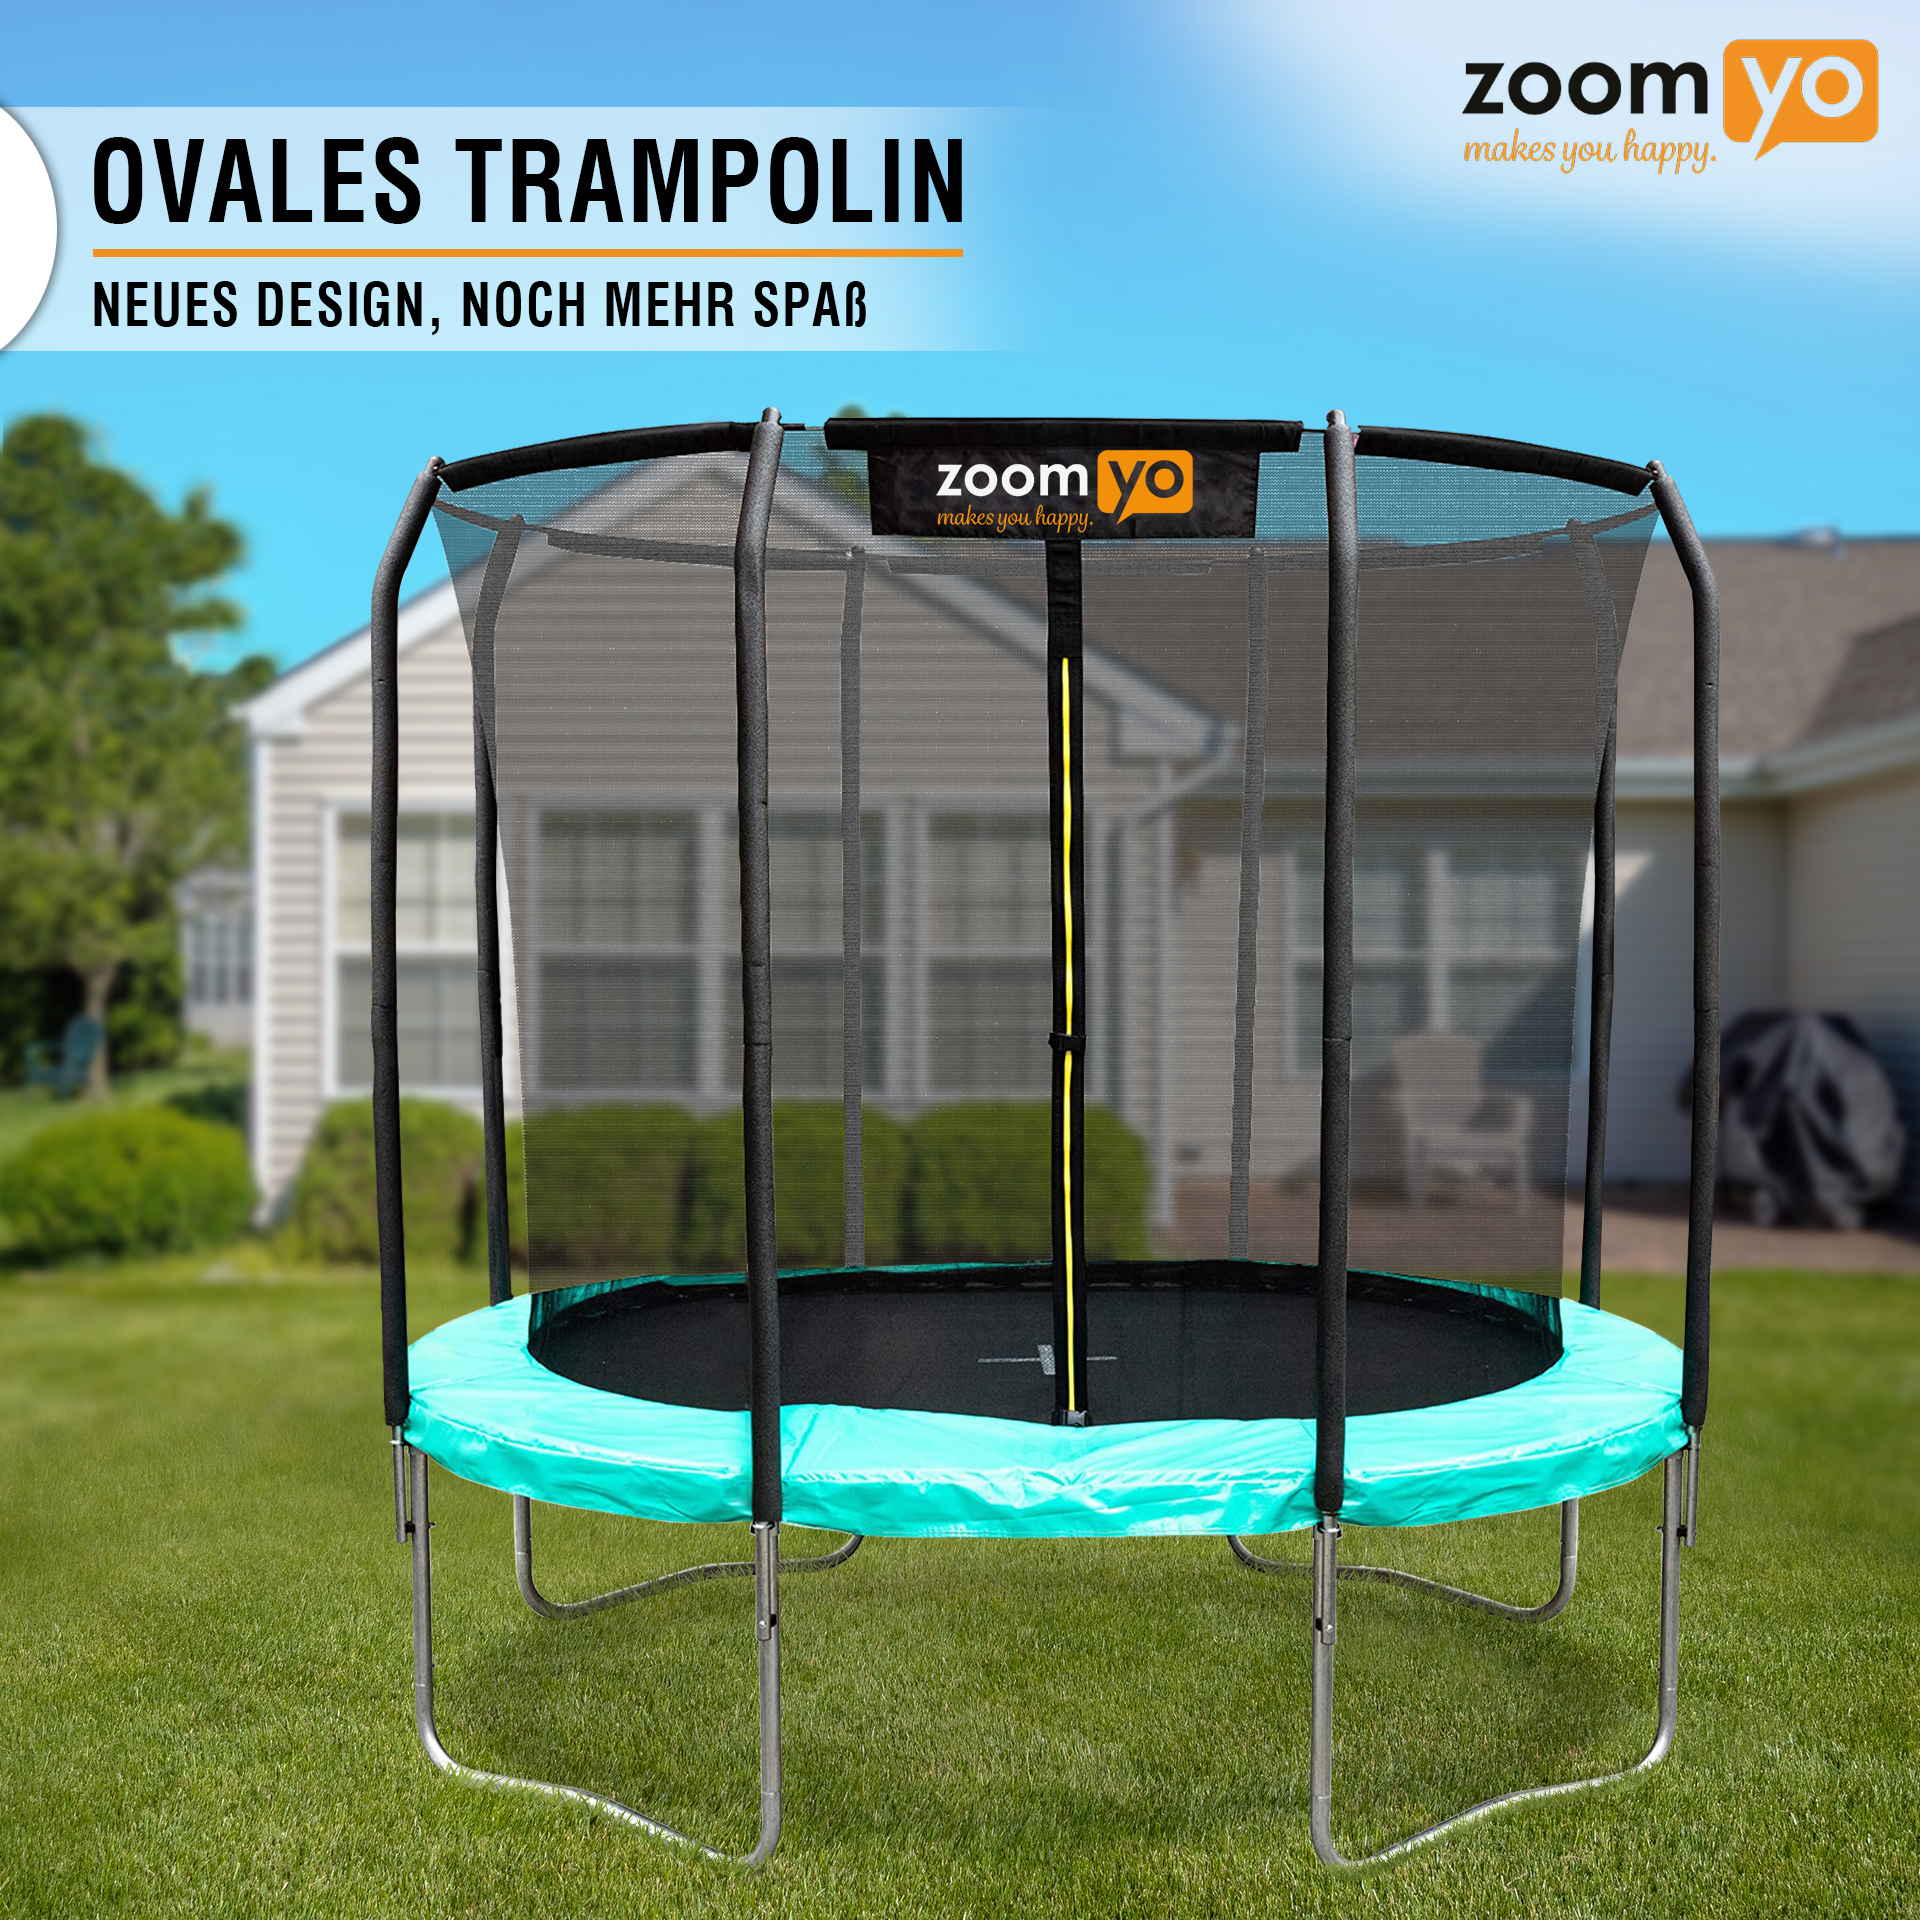 ZOOMYO Trampolin,oval,Leiter separat erhältlich,für schwarz-Grün Trampolin, komplexe Sprungtechniken